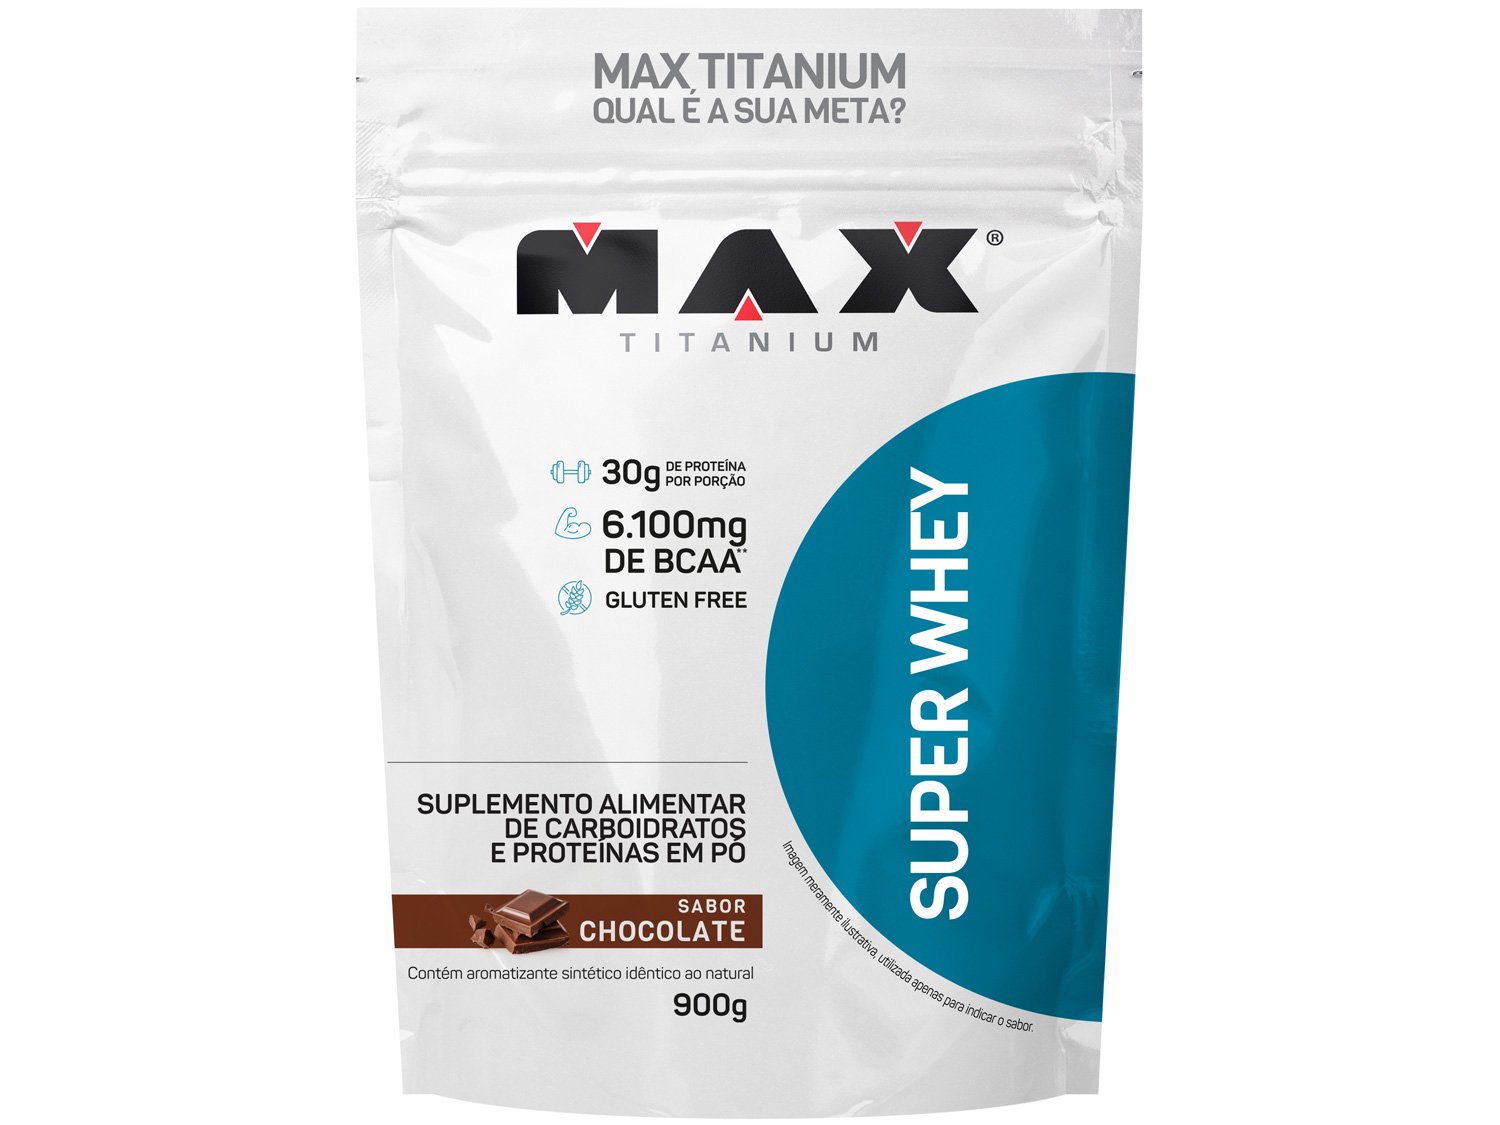 Superwhey Max Titanium - 900g